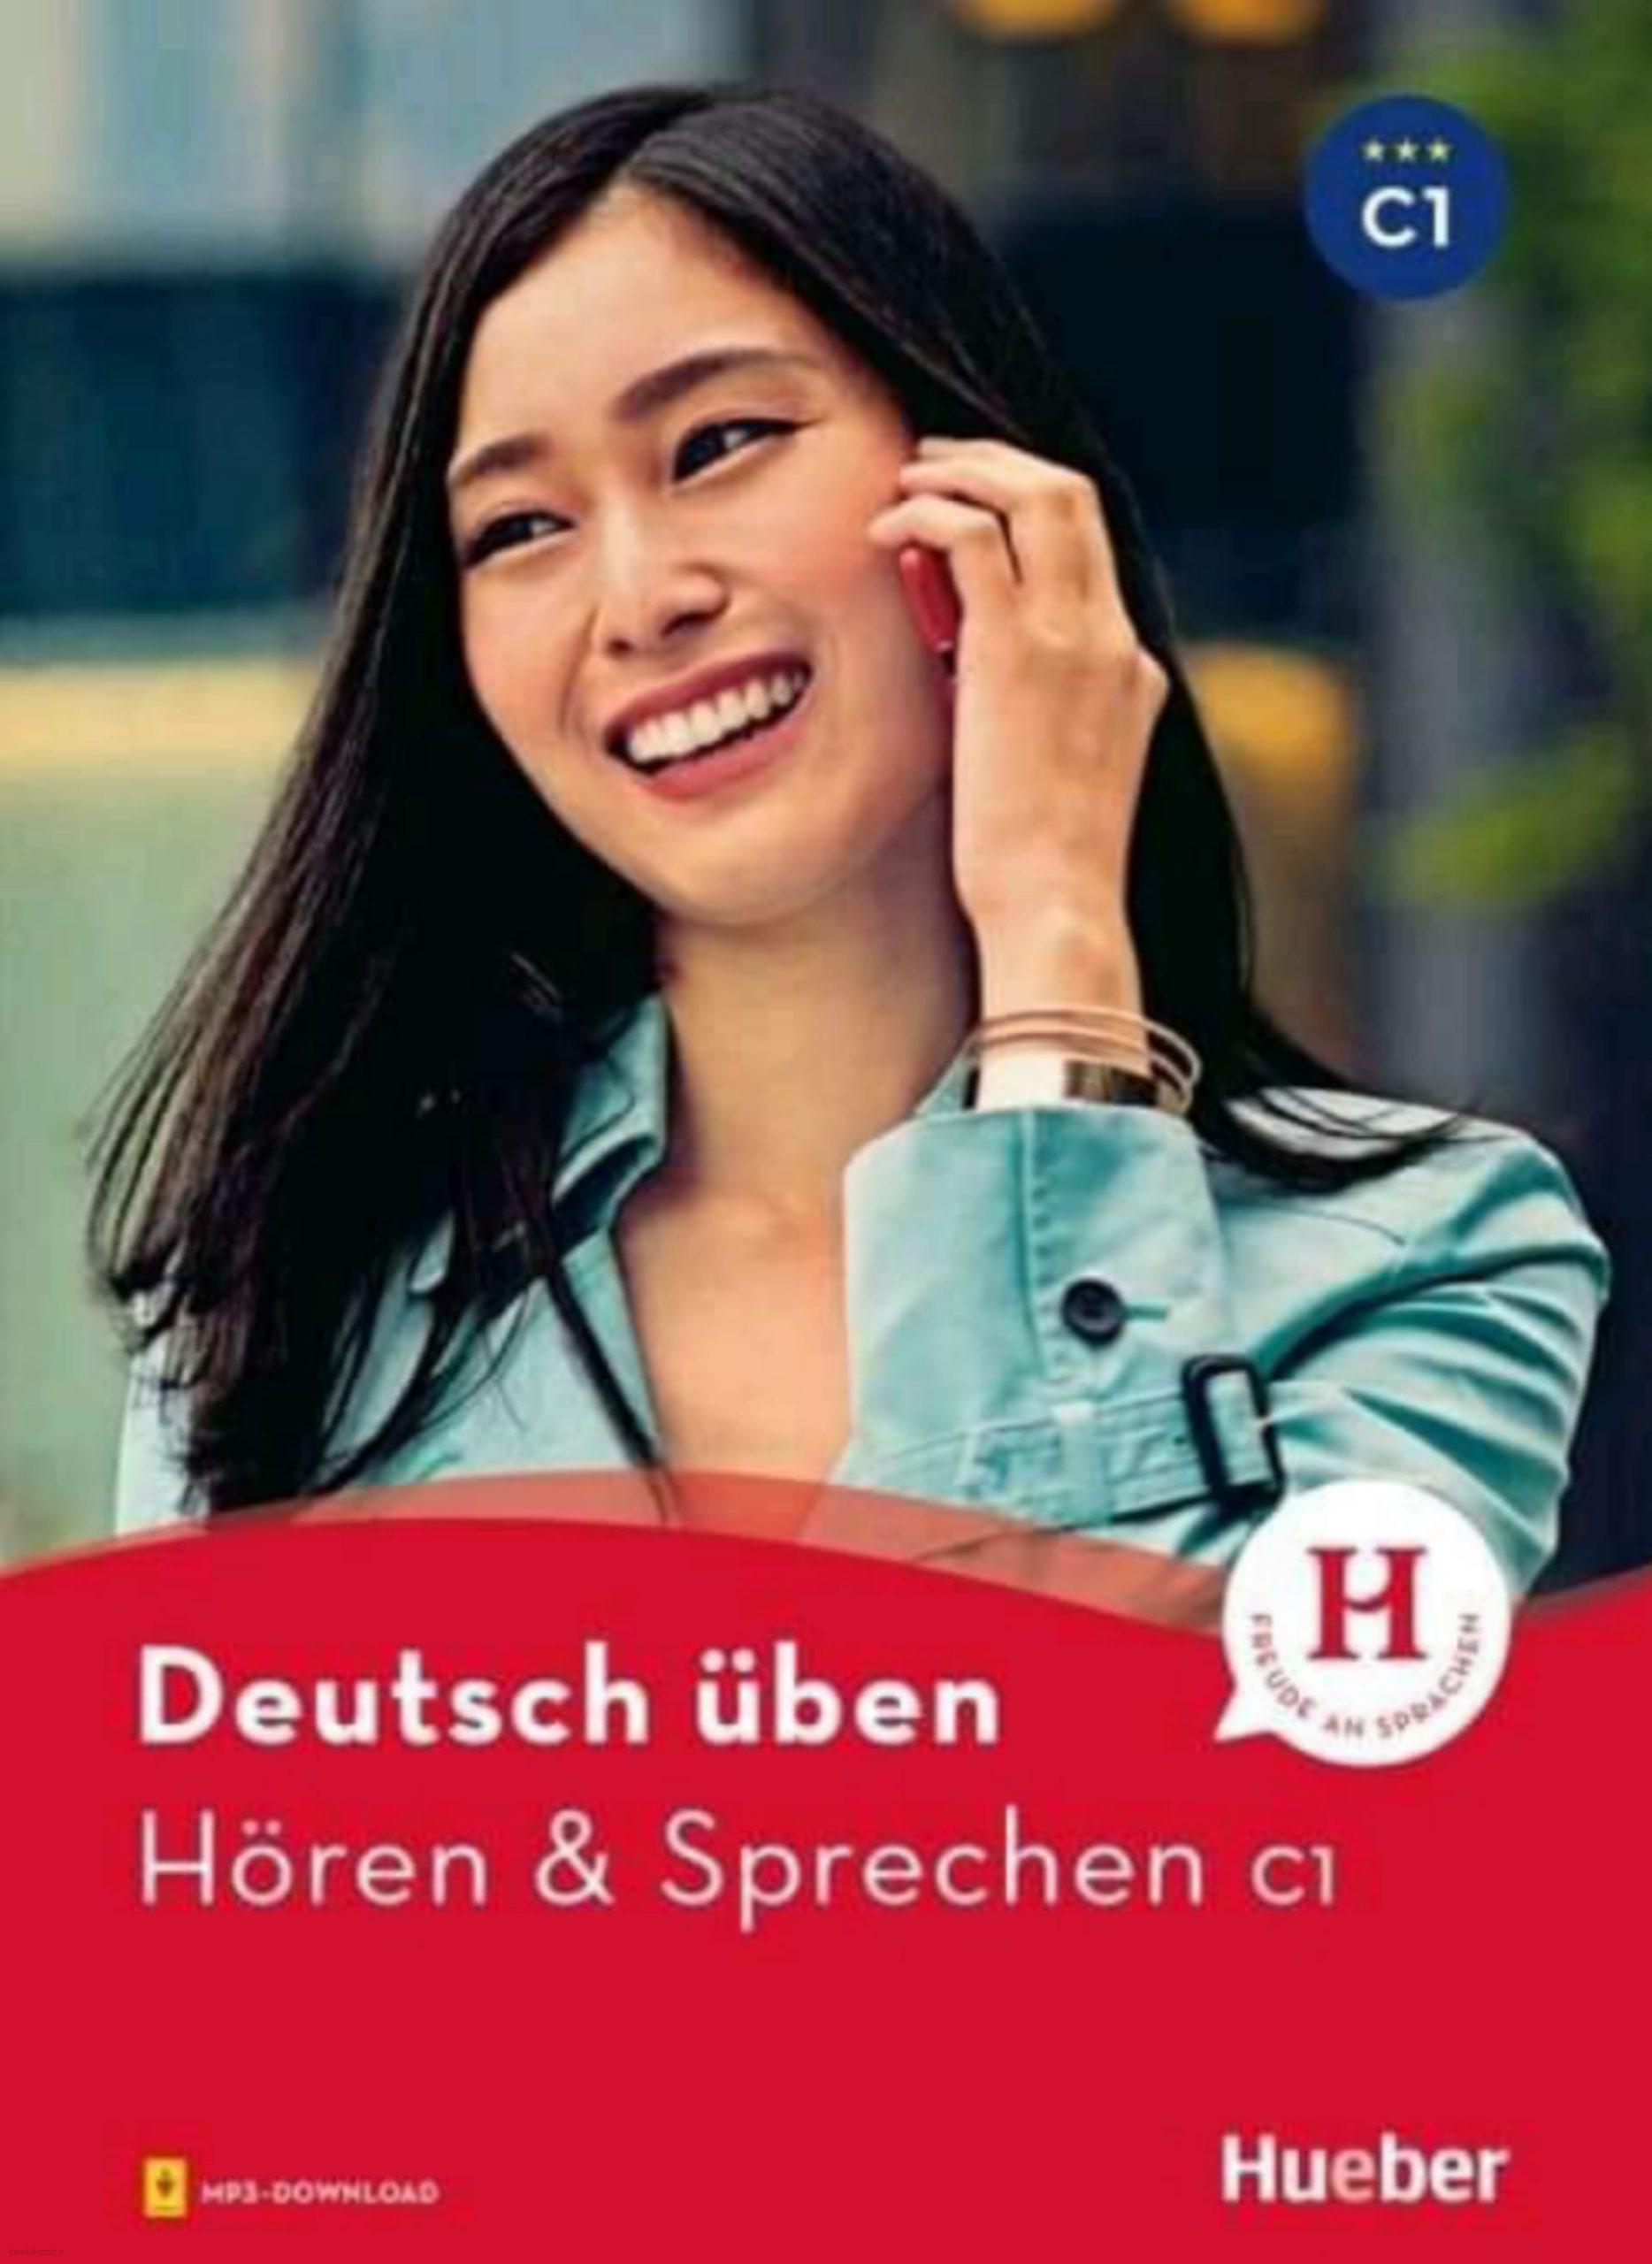 Hören & Sprechen C1 (Hueber)